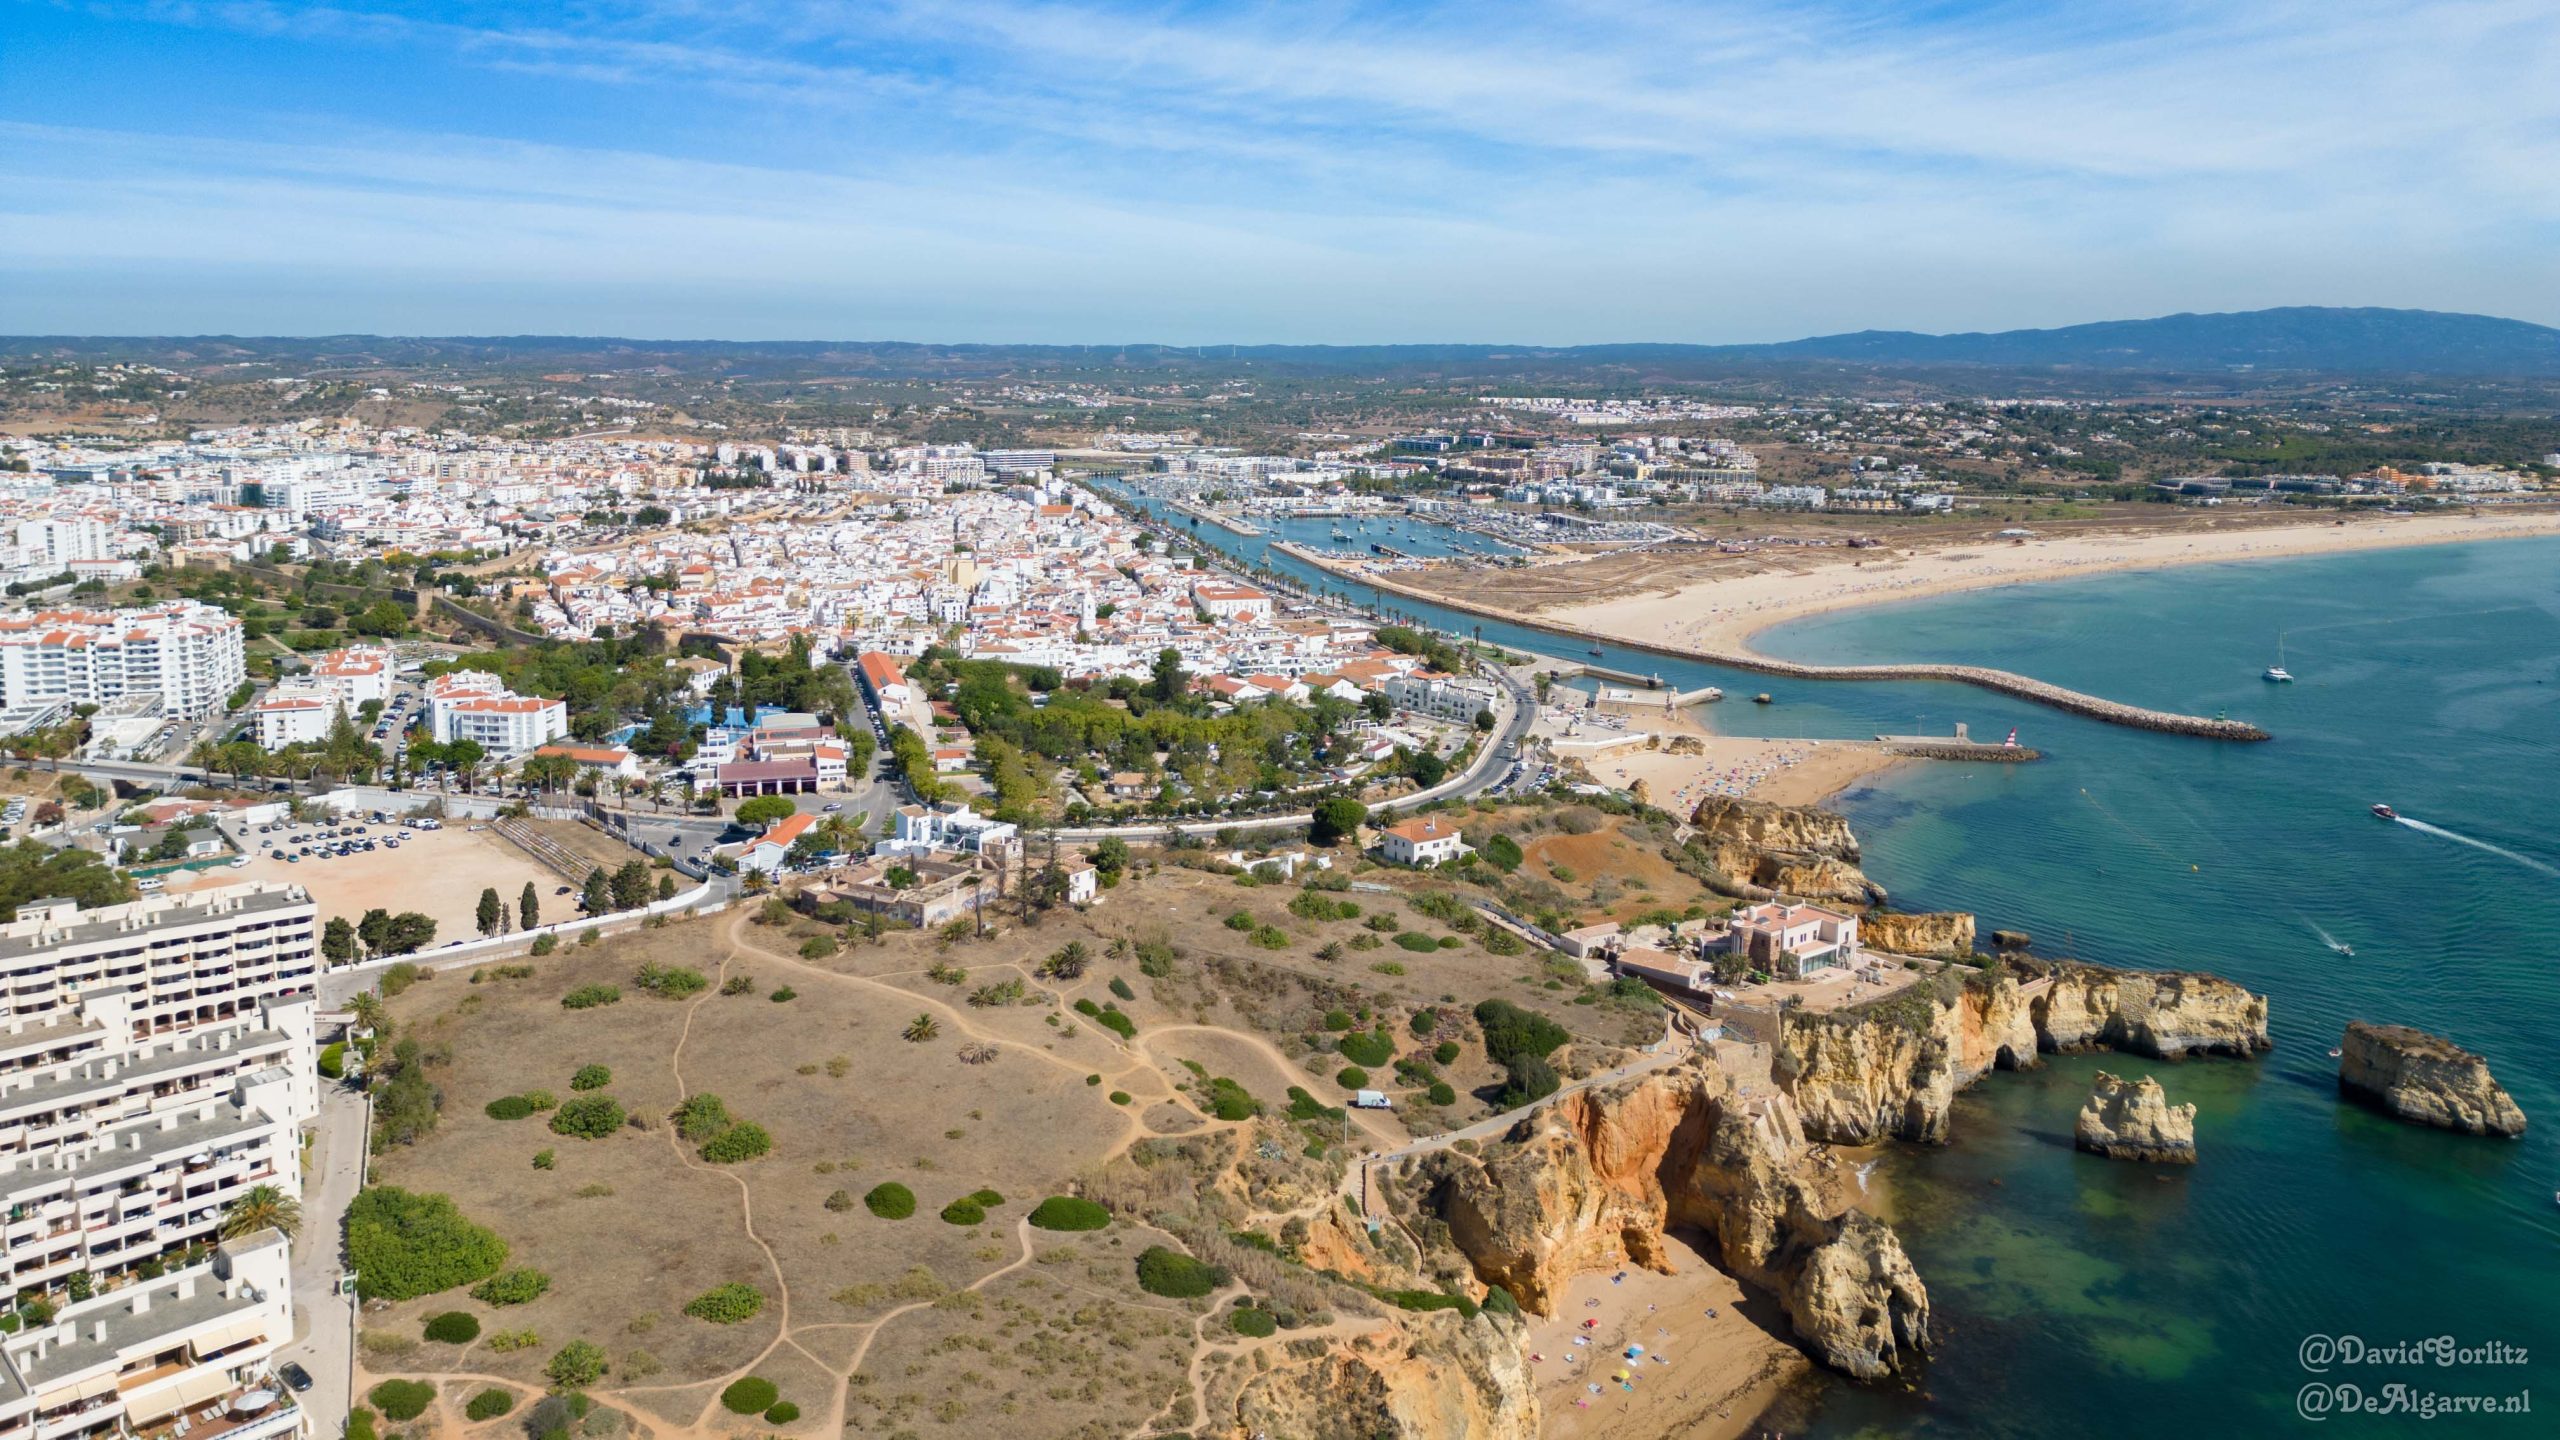 Algarve - wonen en verhuizen